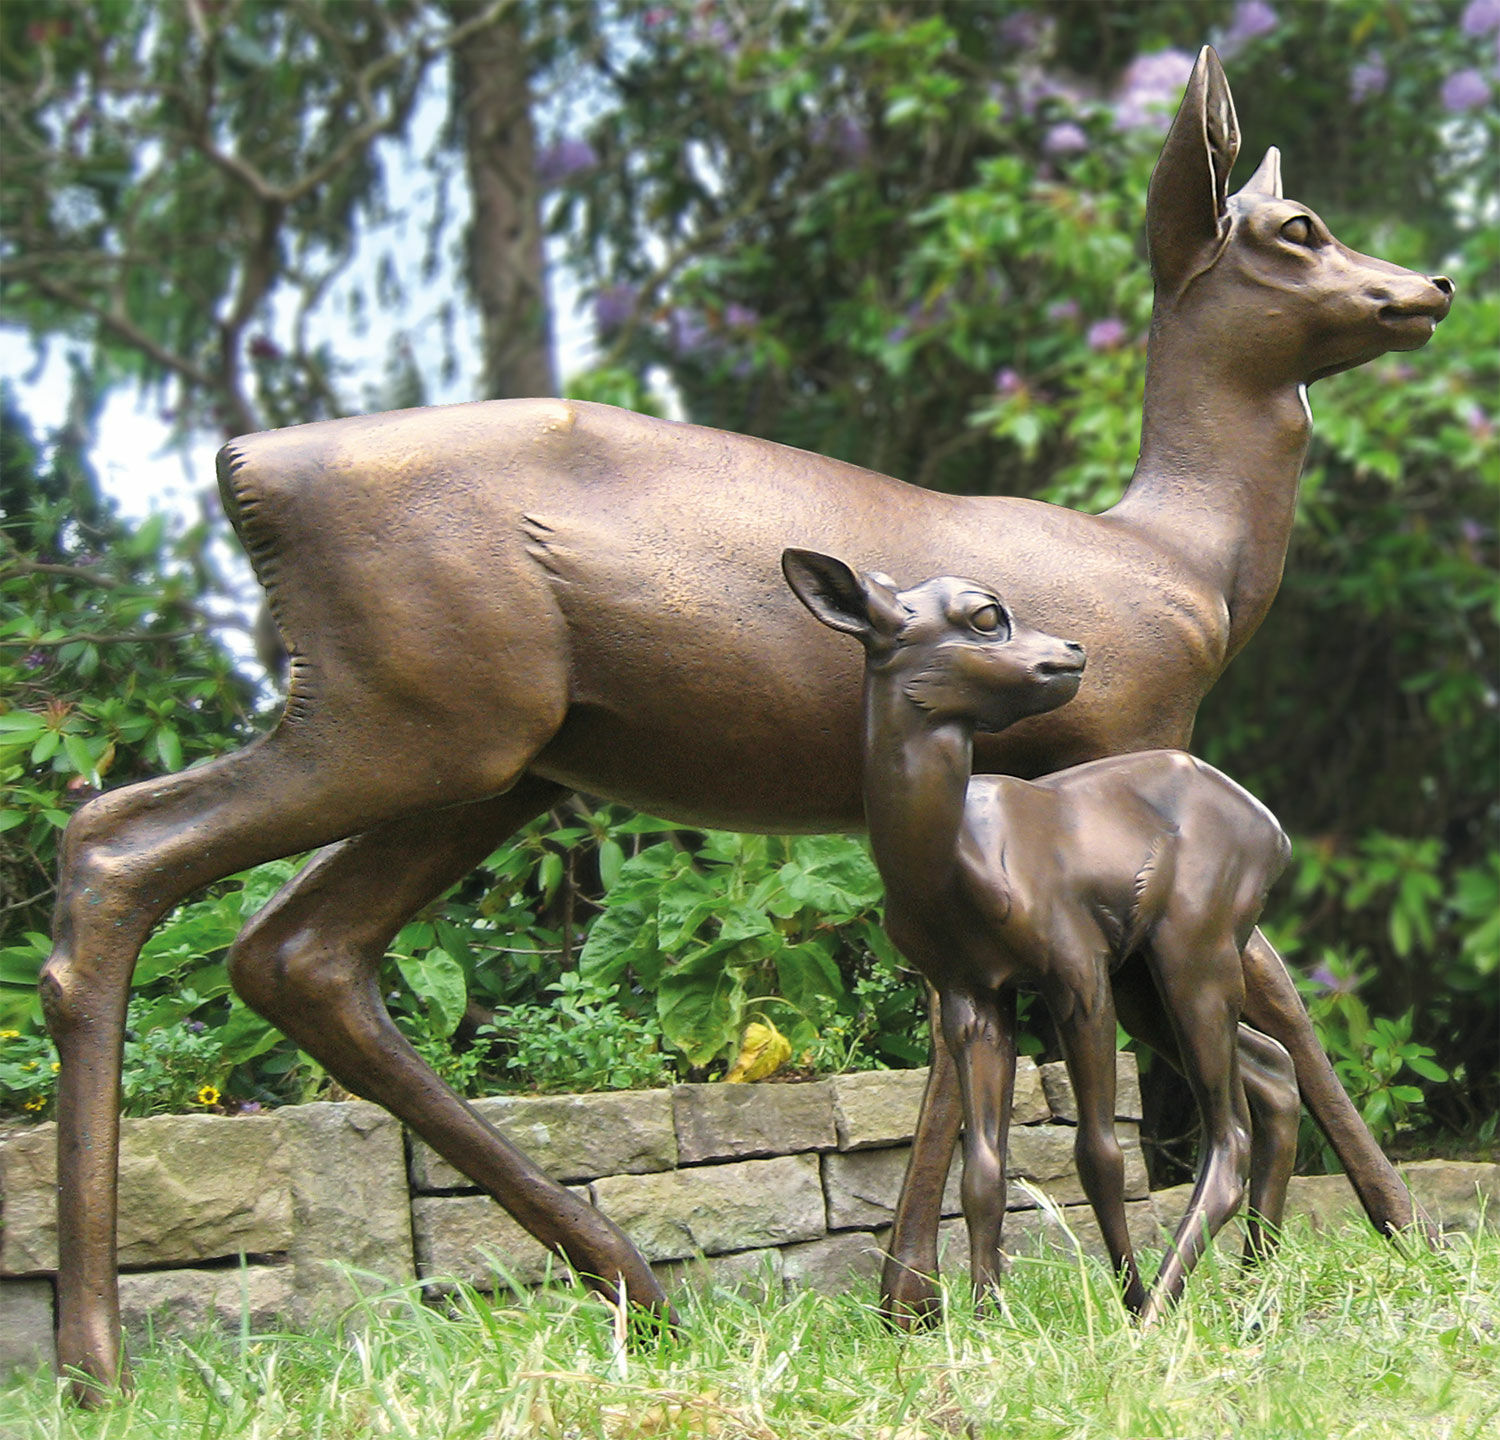 Sculpture de jardin "Doe" (sans fauve), bronze von Helmut Diller